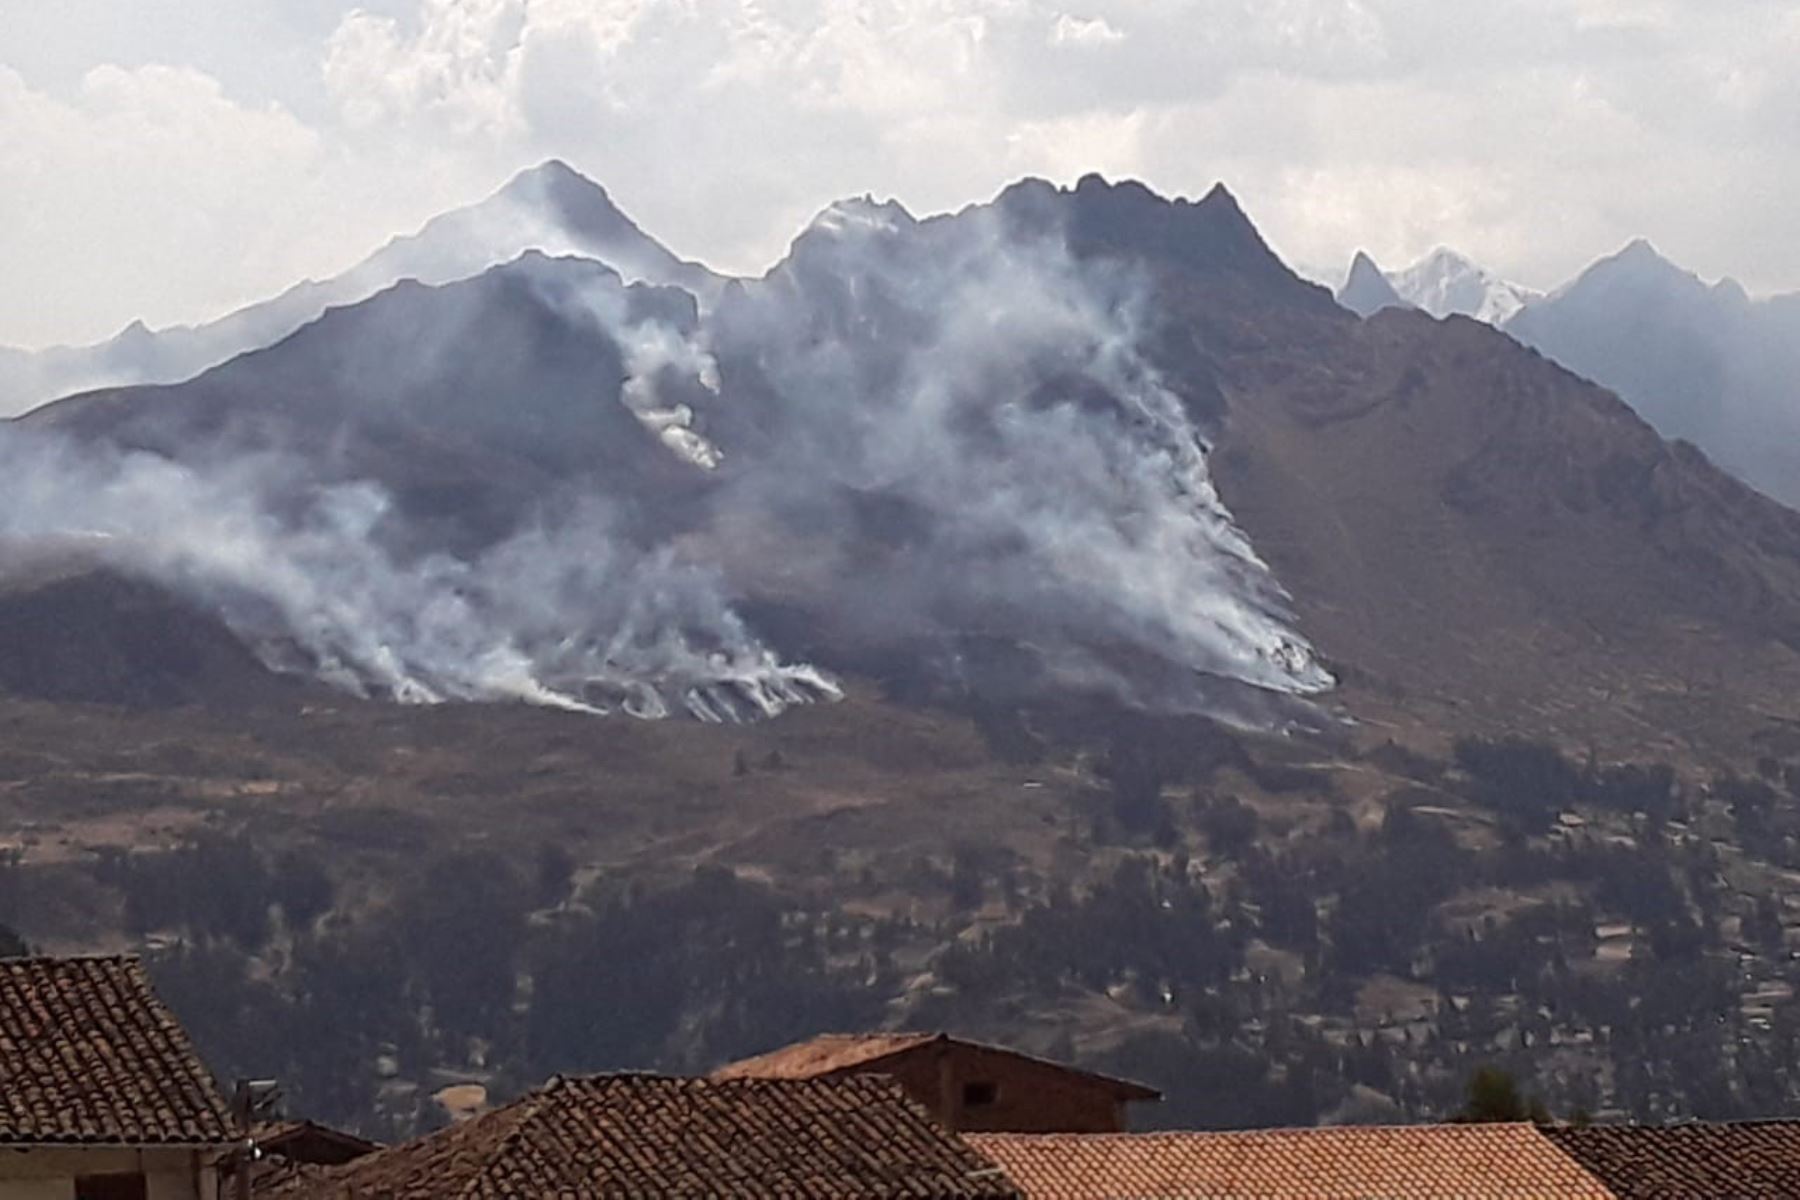 Incendio forestal afectó 150 hectáreas de pastos naturales en zona de amortiguamiento del Parque Nacional Huascarán.